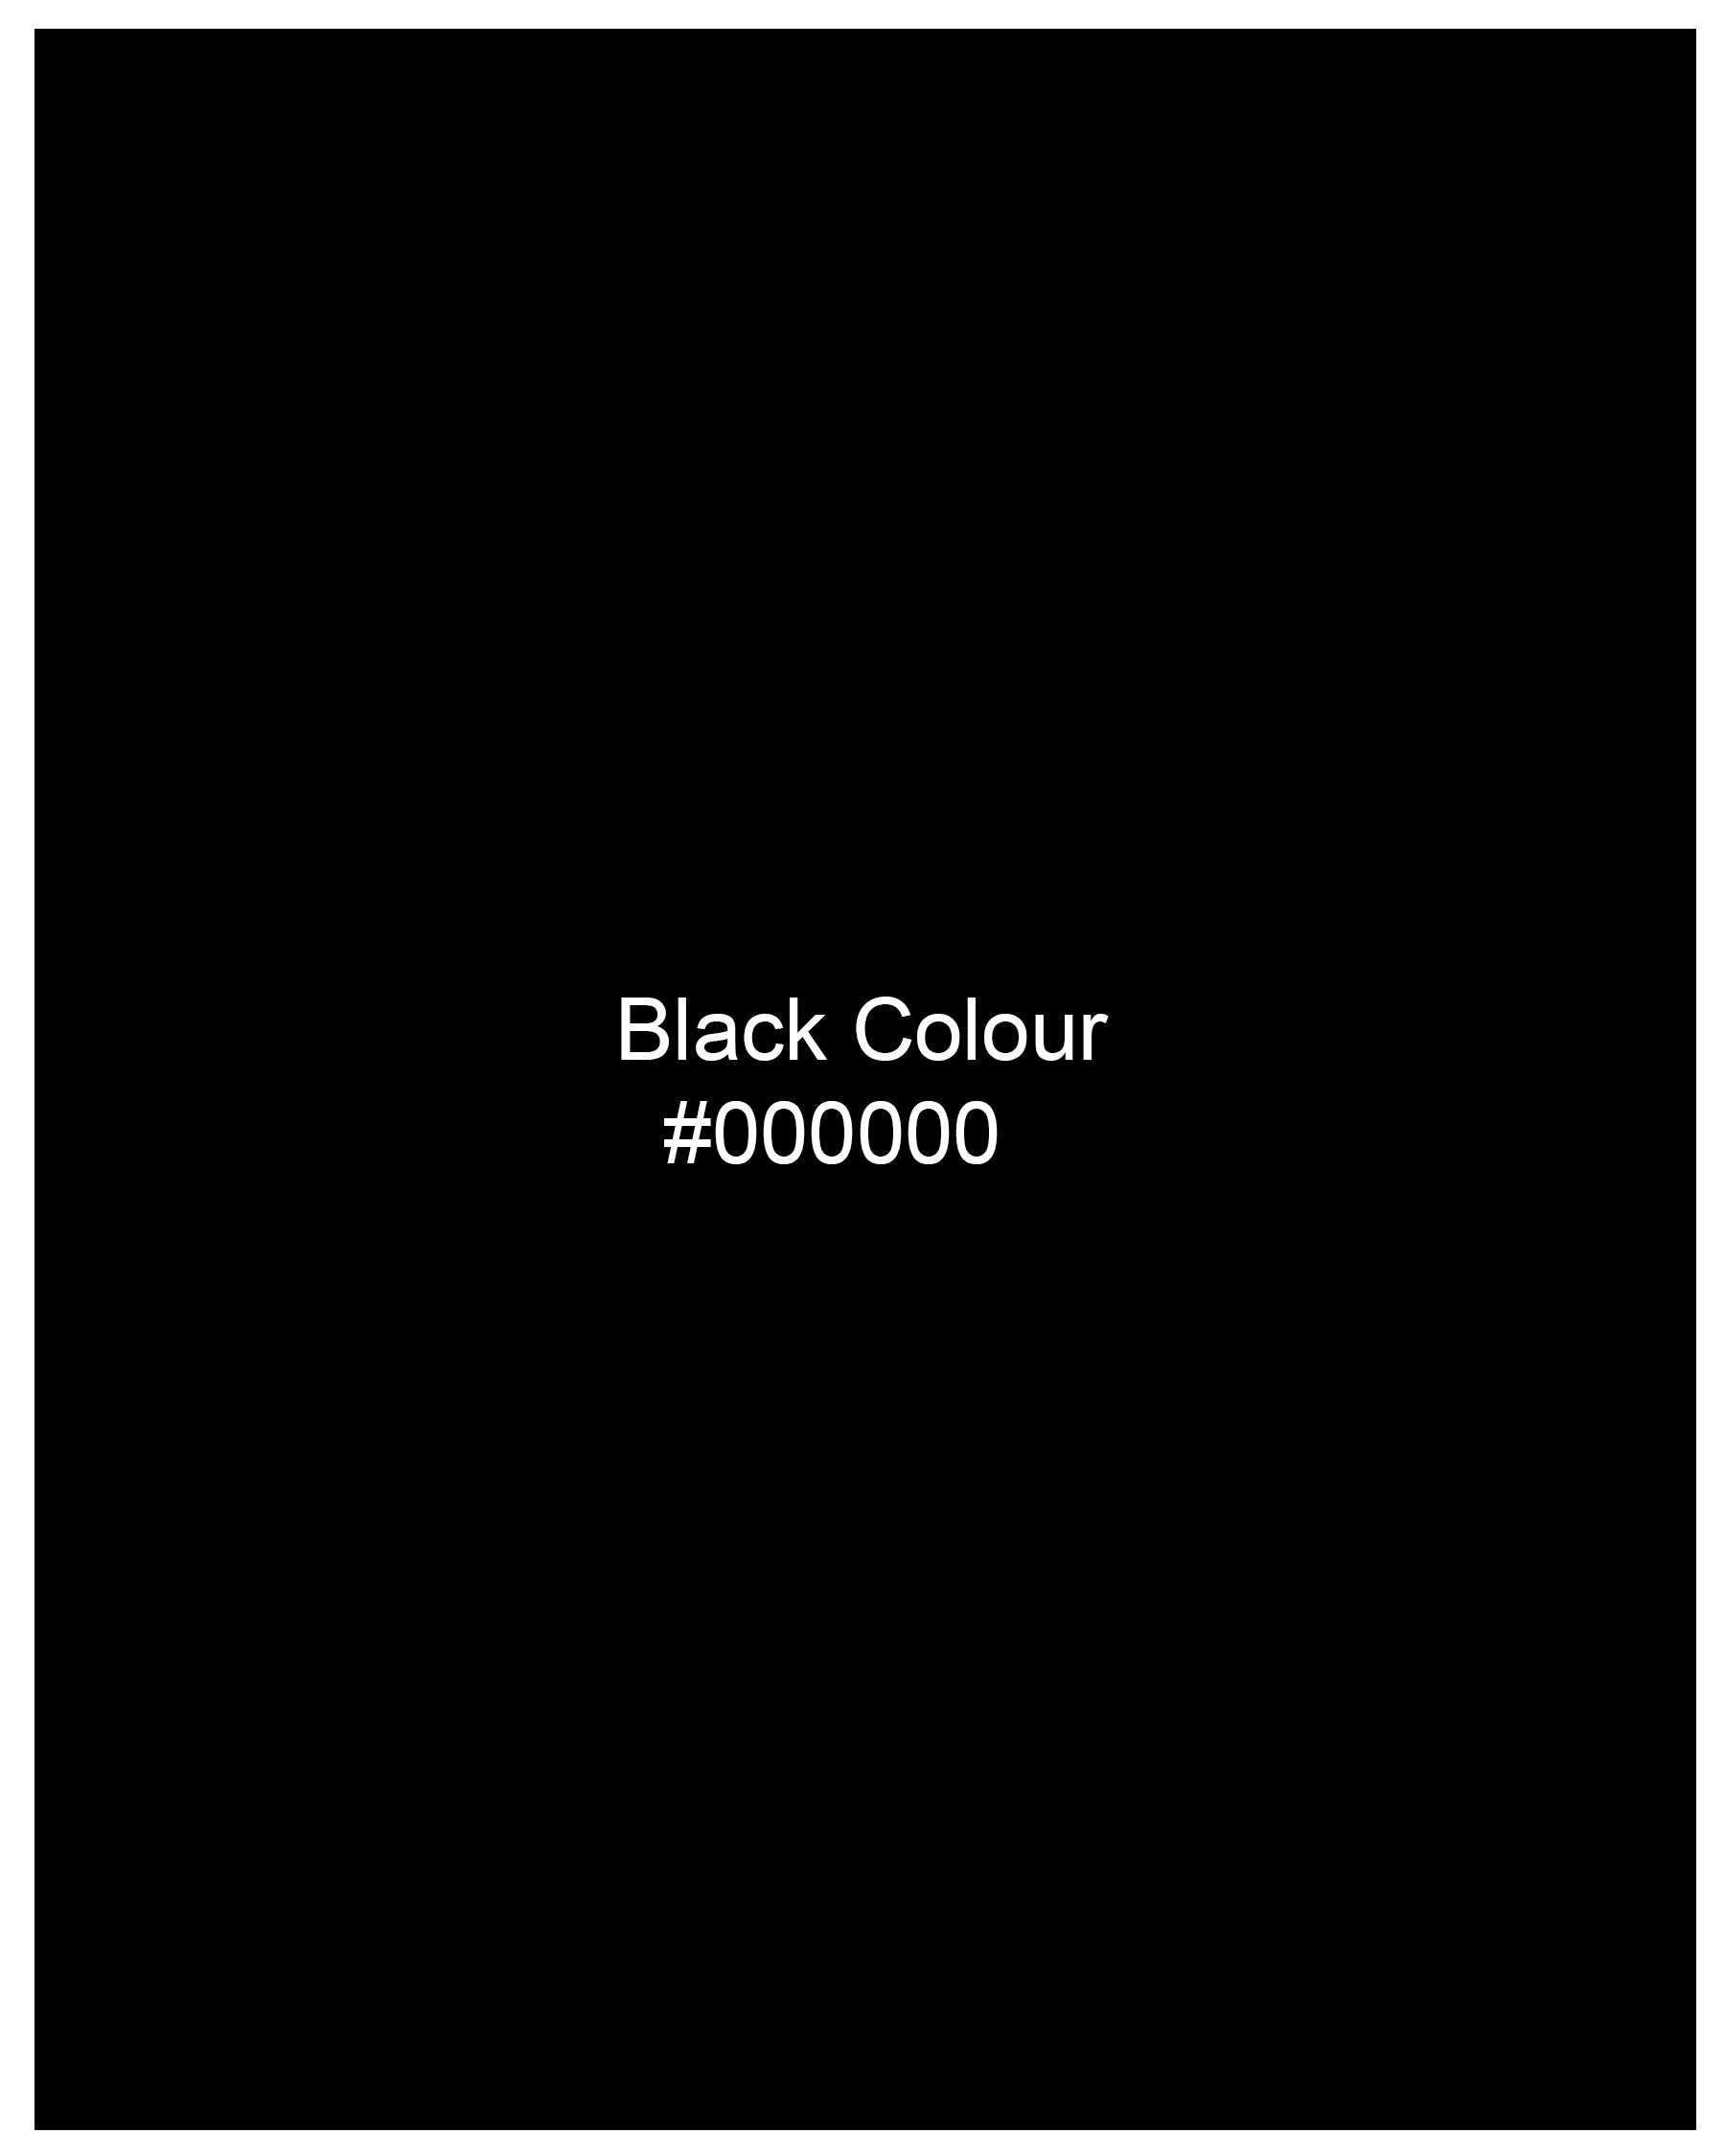 Jade Black Textured Luxurious Linen Shirt 8047-BLK-38, 8047-BLK-H-38, 8047-BLK-39, 8047-BLK-H-39, 8047-BLK-40, 8047-BLK-H-40, 8047-BLK-42, 8047-BLK-H-42, 8047-BLK-44, 8047-BLK-H-44, 8047-BLK-46, 8047-BLK-H-46, 8047-BLK-48, 8047-BLK-H-48, 8047-BLK-50, 8047-BLK-H-50, 8047-BLK-52, 8047-BLK-H-52